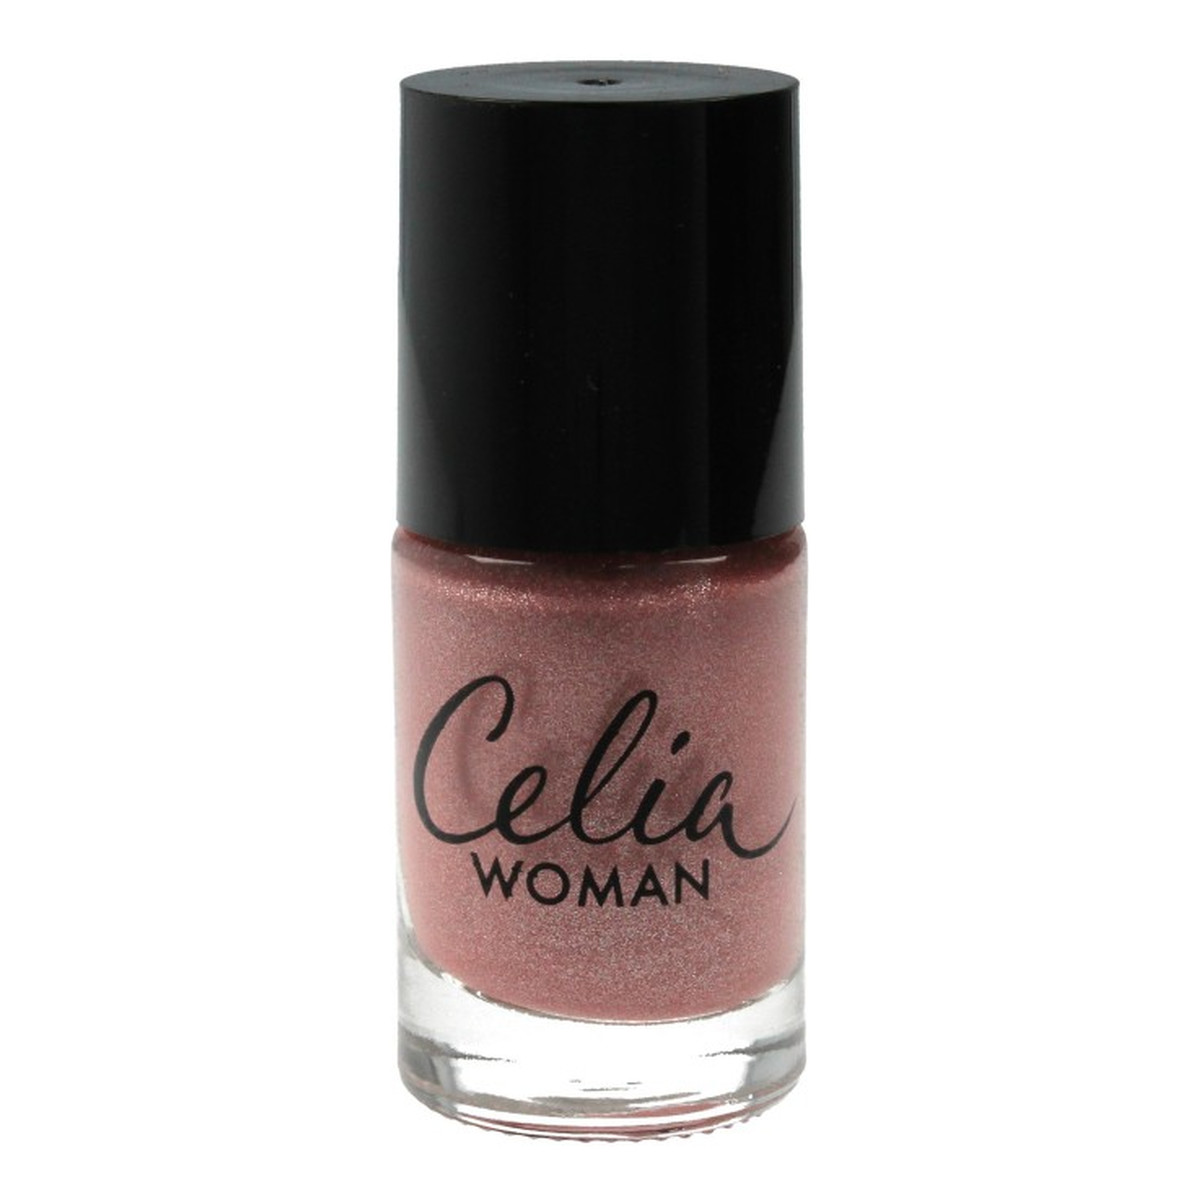 Celia Woman lakier do paznokci winylowy perłowy 10ml